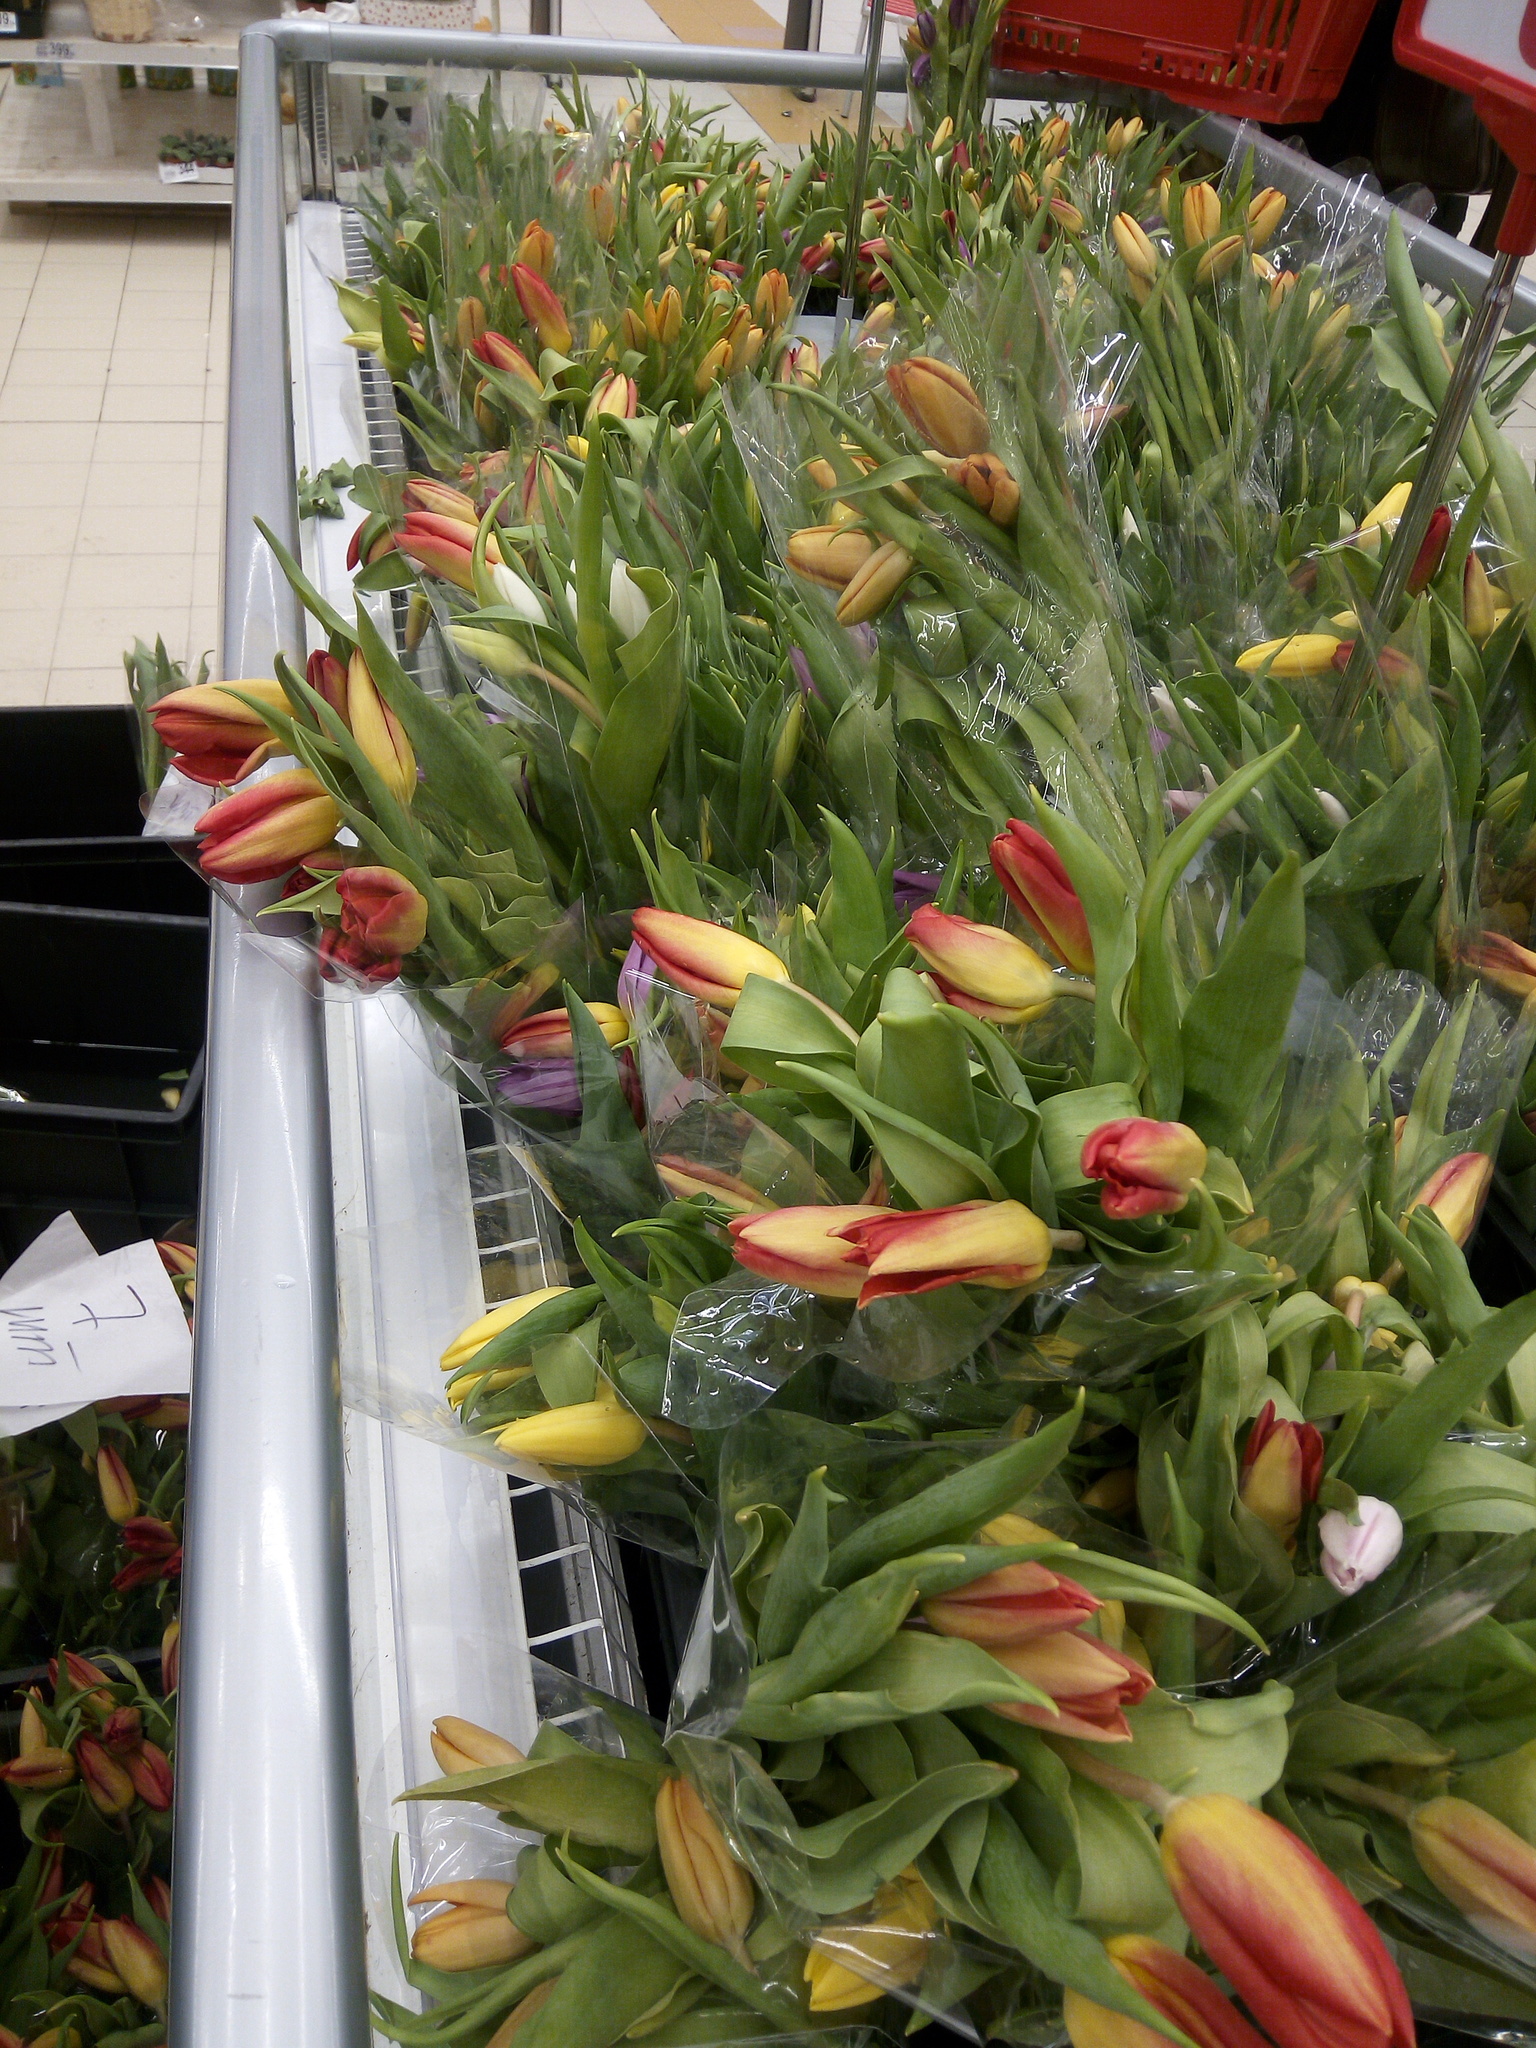 Купить тюльпаны в леруа мерлен